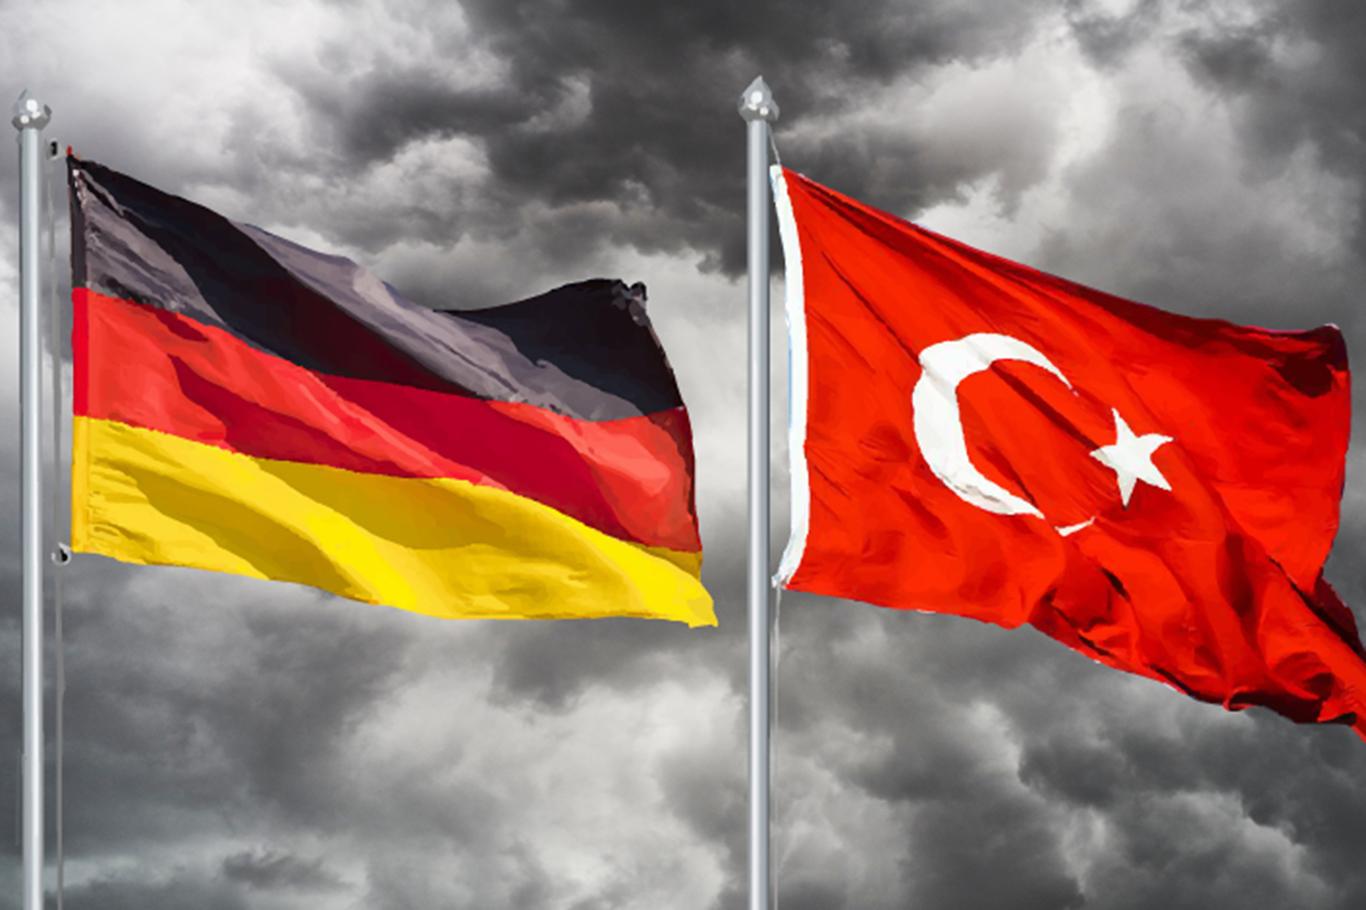 Türkiyeli diplomat ve kamu görevlilerinin Almanya'ya iltica talebi arttı